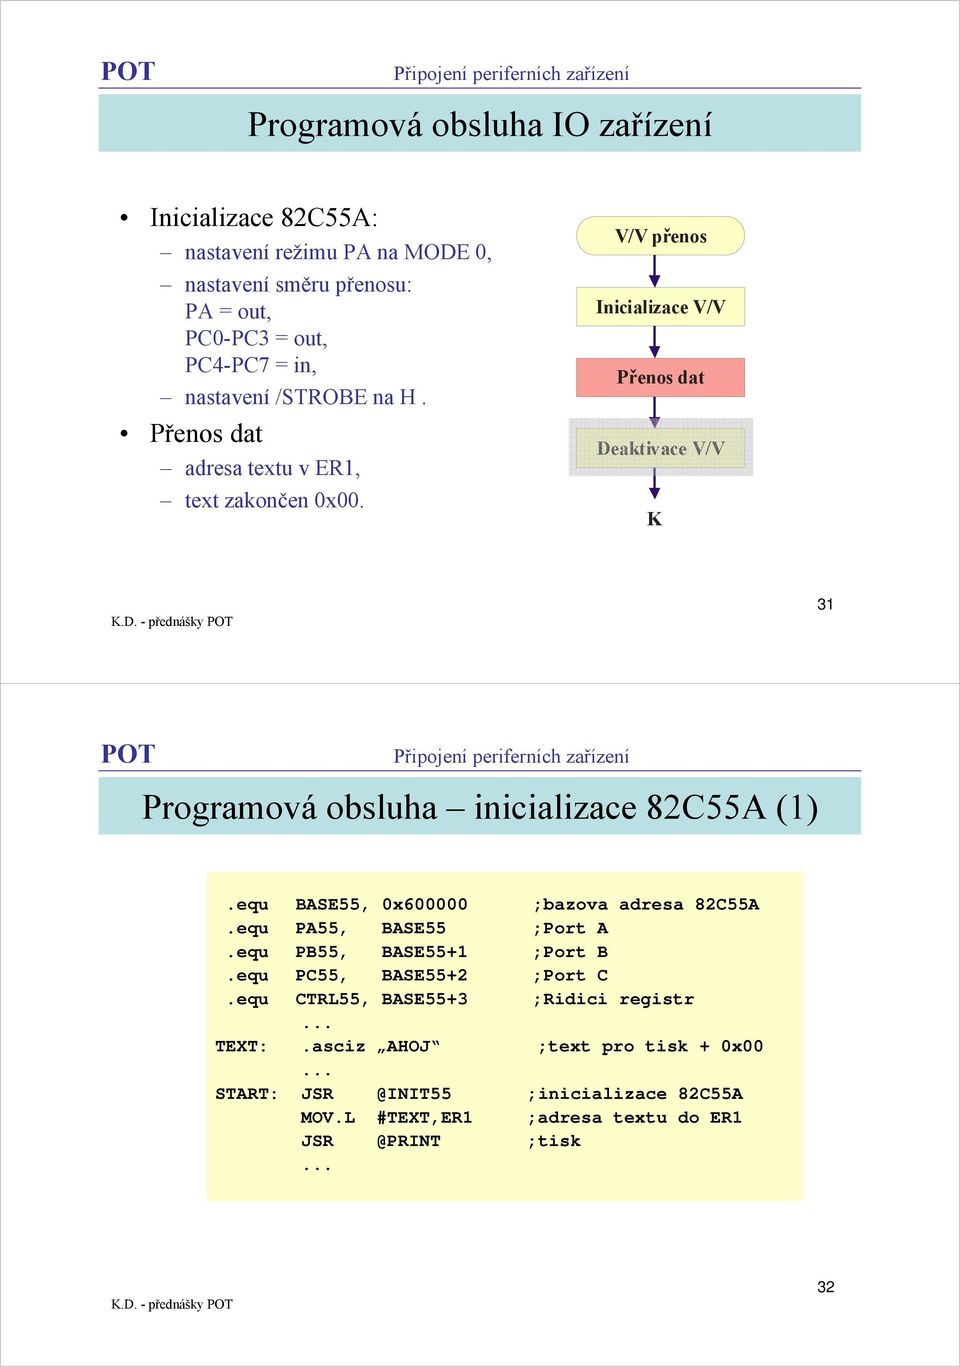 V/V přenos Inicializace V/V Přenos dat Deaktivace V/V K 31 Programová obsluha inicializace 82C55A (1).equ BASE55, 0x600000 ;bazova adresa 82C55A.